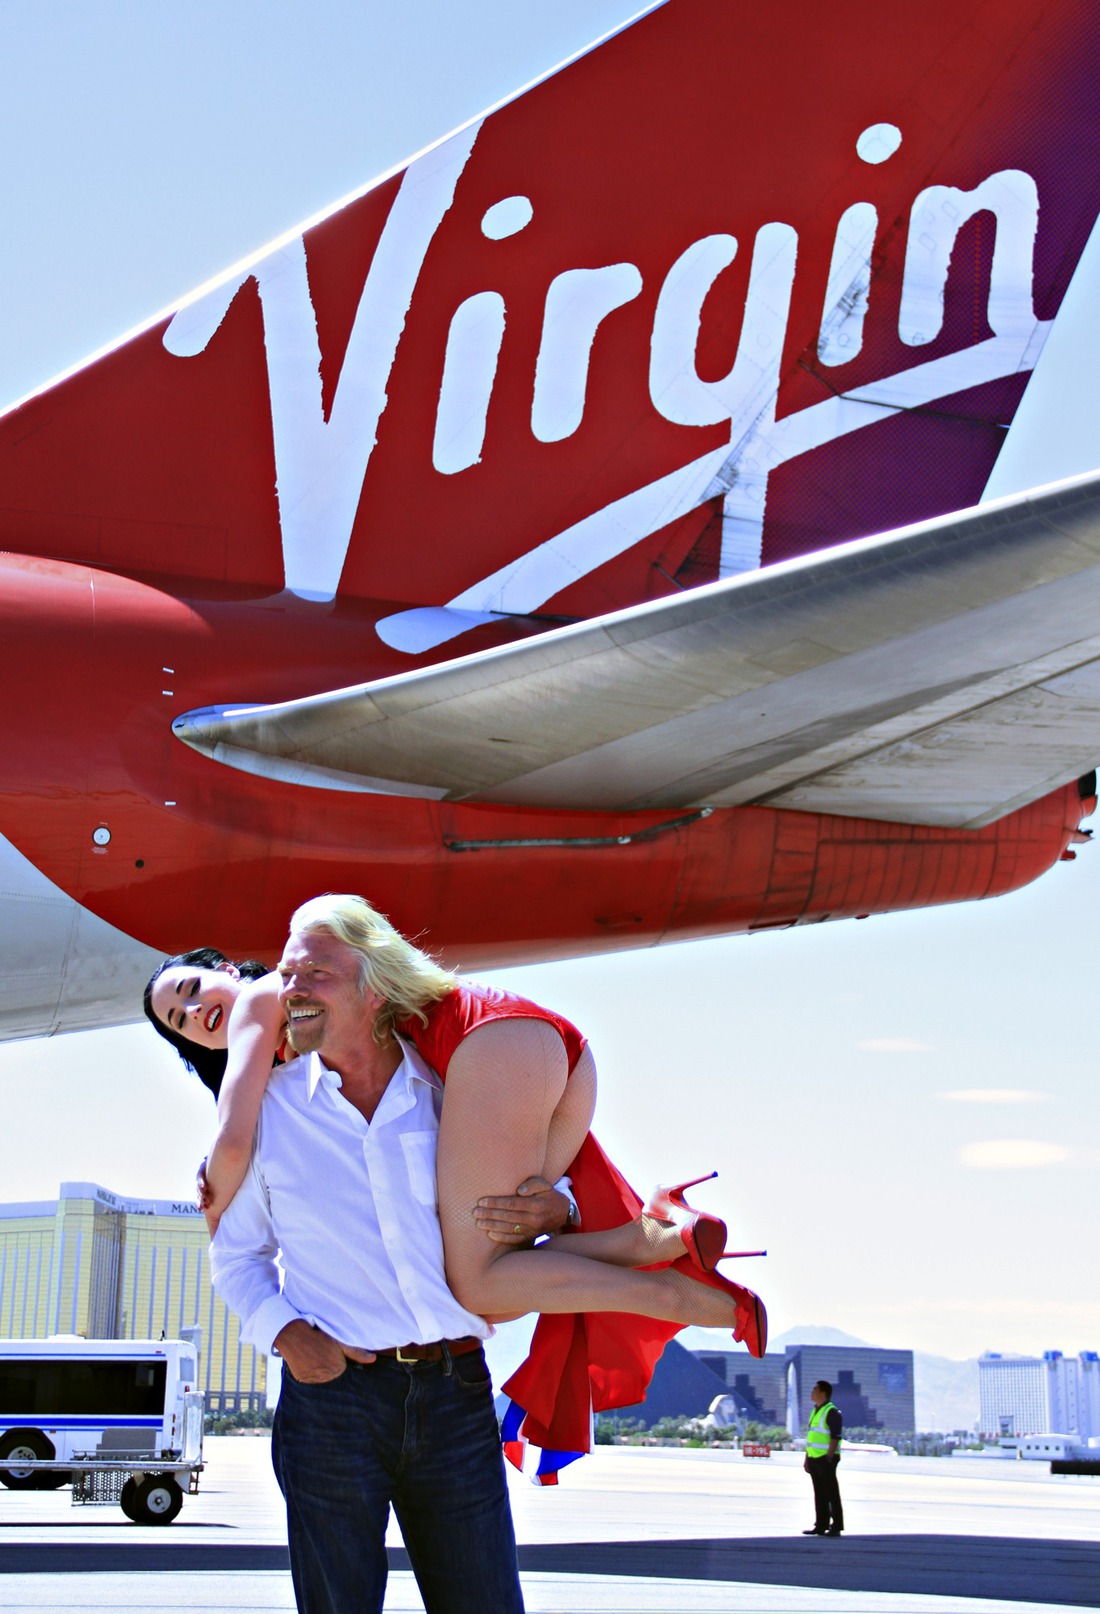 Like a Virgin by Richard Branson